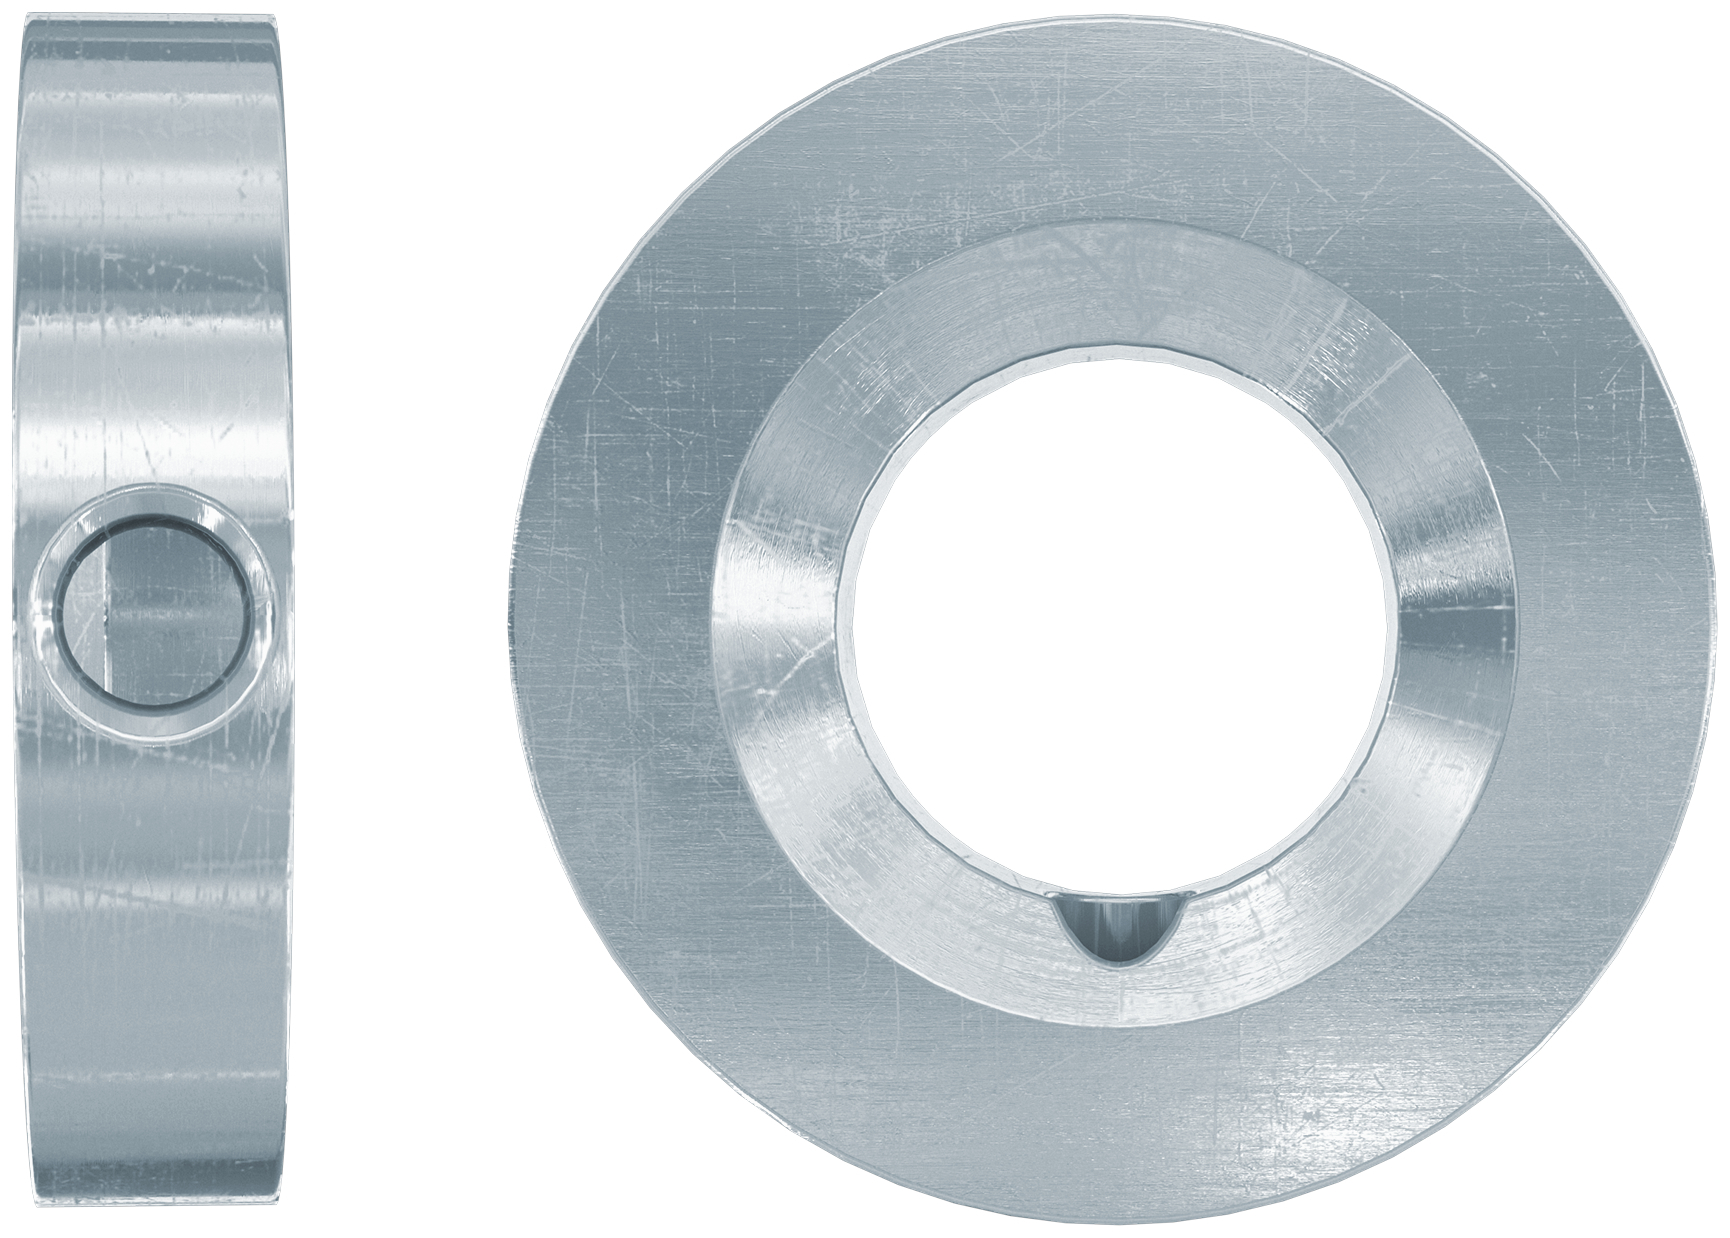 fischer Rondella per applicazioni sismiche FFD 22x9x6 (1 Pz.) Rondella in acciaio inossidabile R per il riempimento del gap anulare fra piastra e fissaggio.